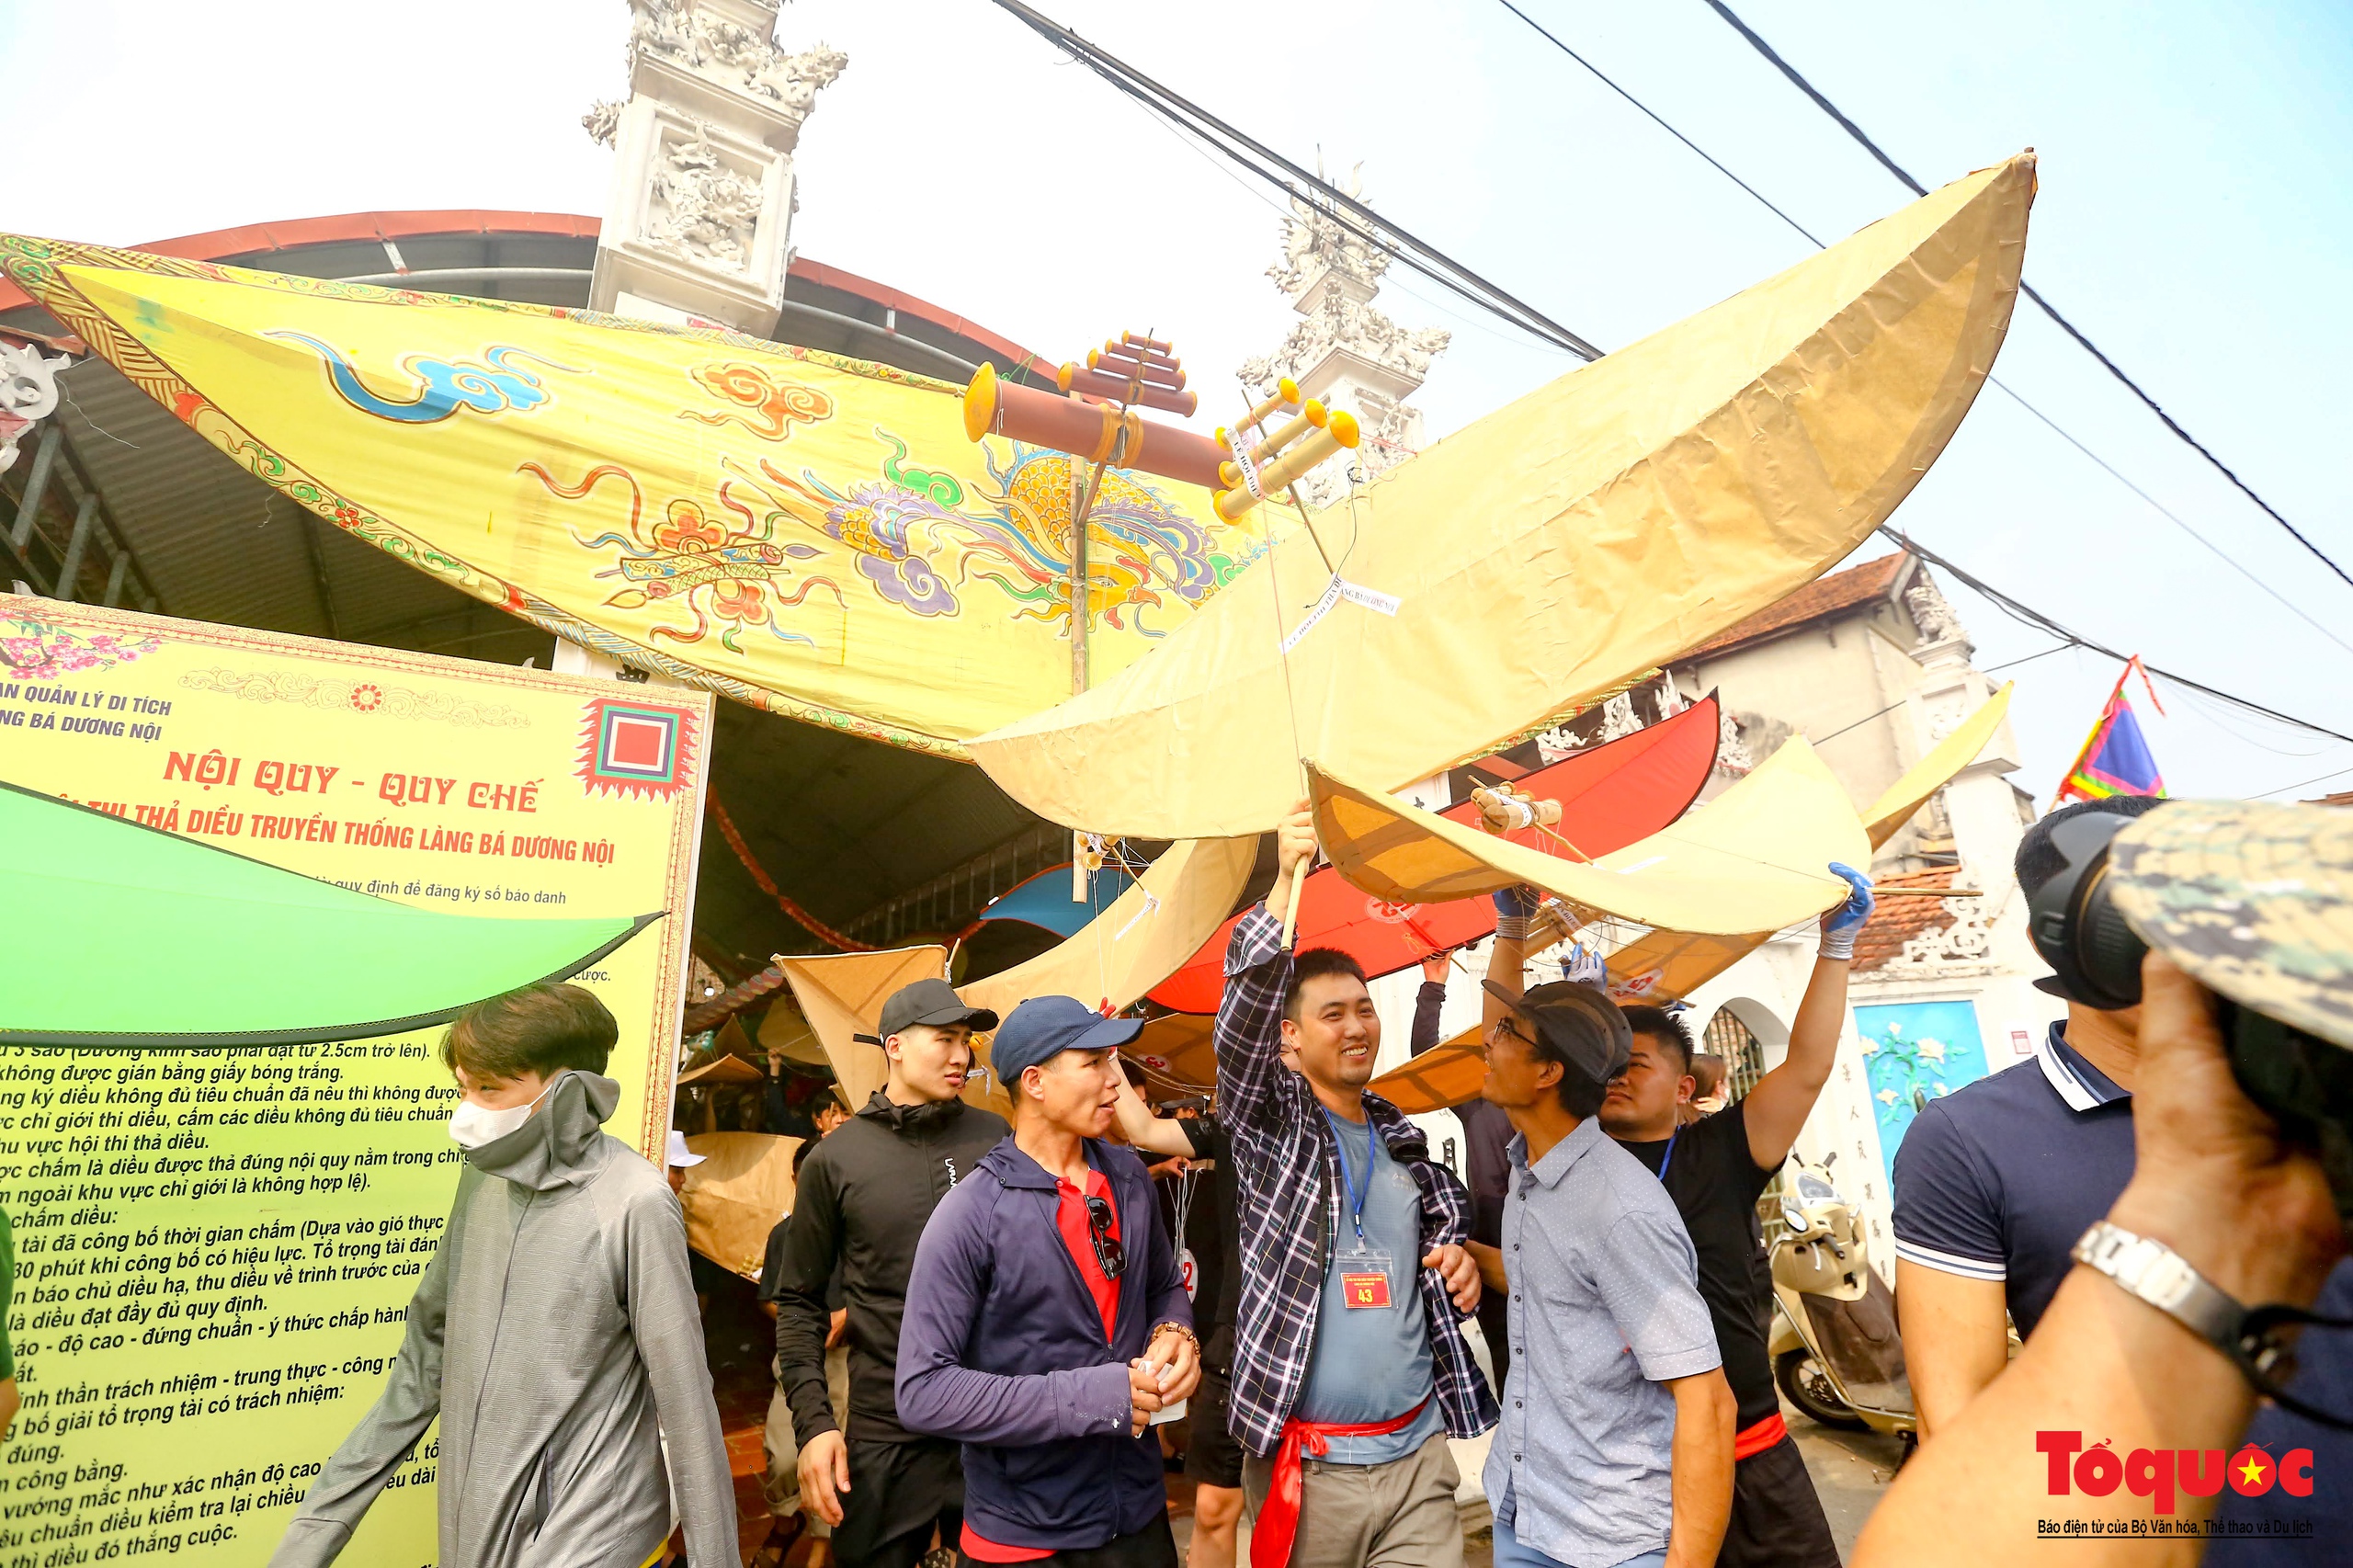 Màn thi đấu gay cấn tại lễ hội thi thả diều 'ngàn năm tuổi' ở làng Bá Dương Nội - Ảnh 10.